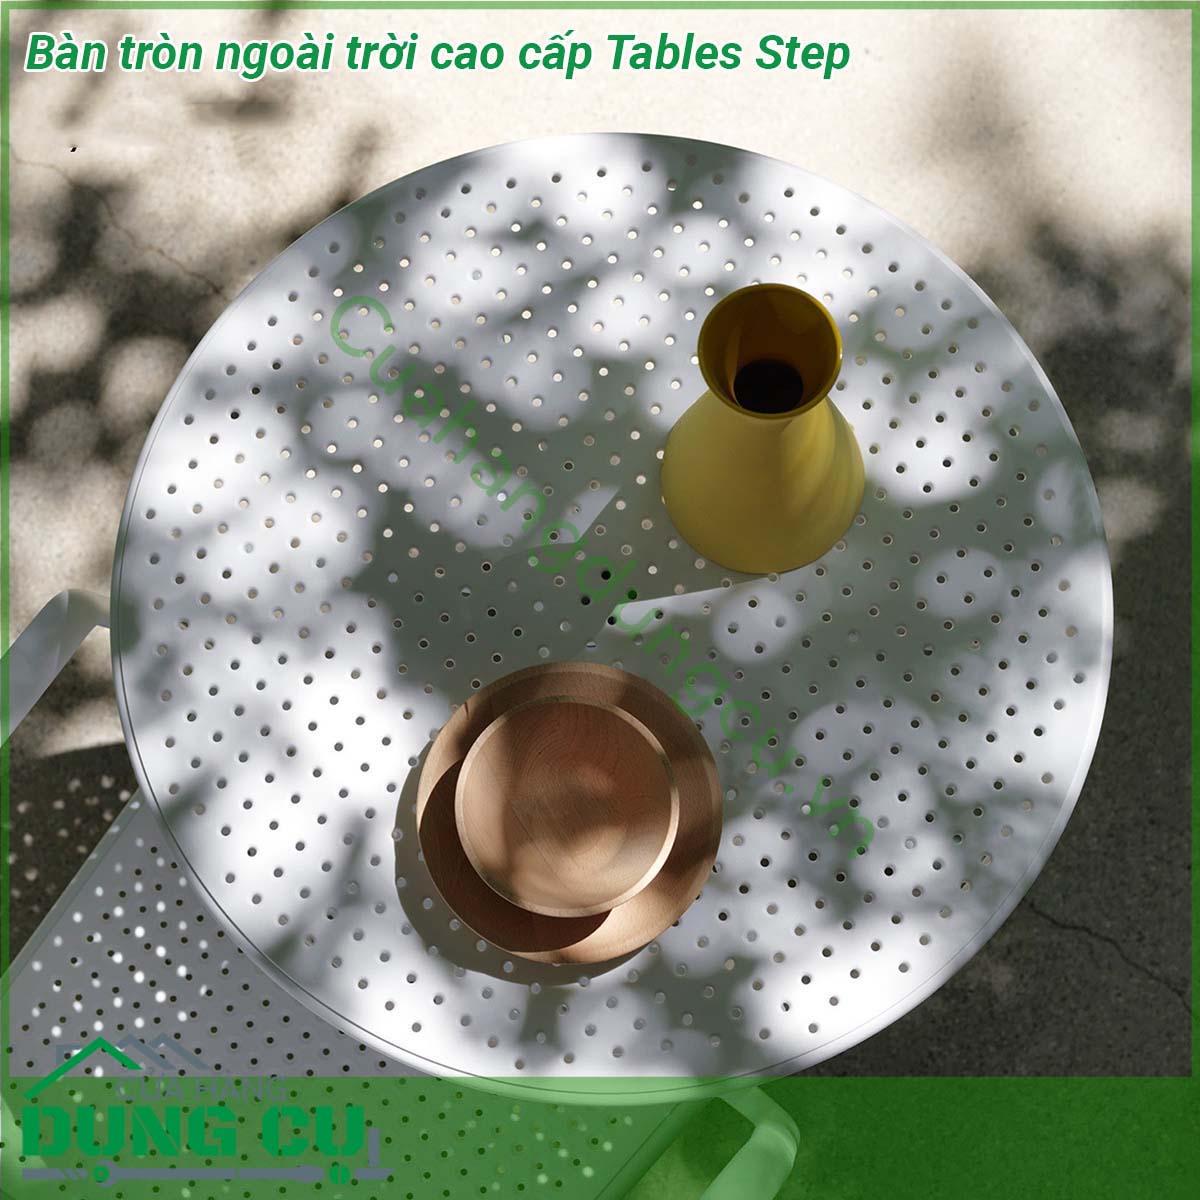 Bàn tròn ngoài trời cao cấp Tables Step với chất liệu nhựa polypropylene sợi thủy tinh với phụ gia chống tia UV thân thiện với môi trường và an toàn cho người sử dụng Bạn có thể sử dụng chúng cho cả không gian nội thất và ngoài thất sân vườn mà không sợ nắng mưa ảnh hưởng